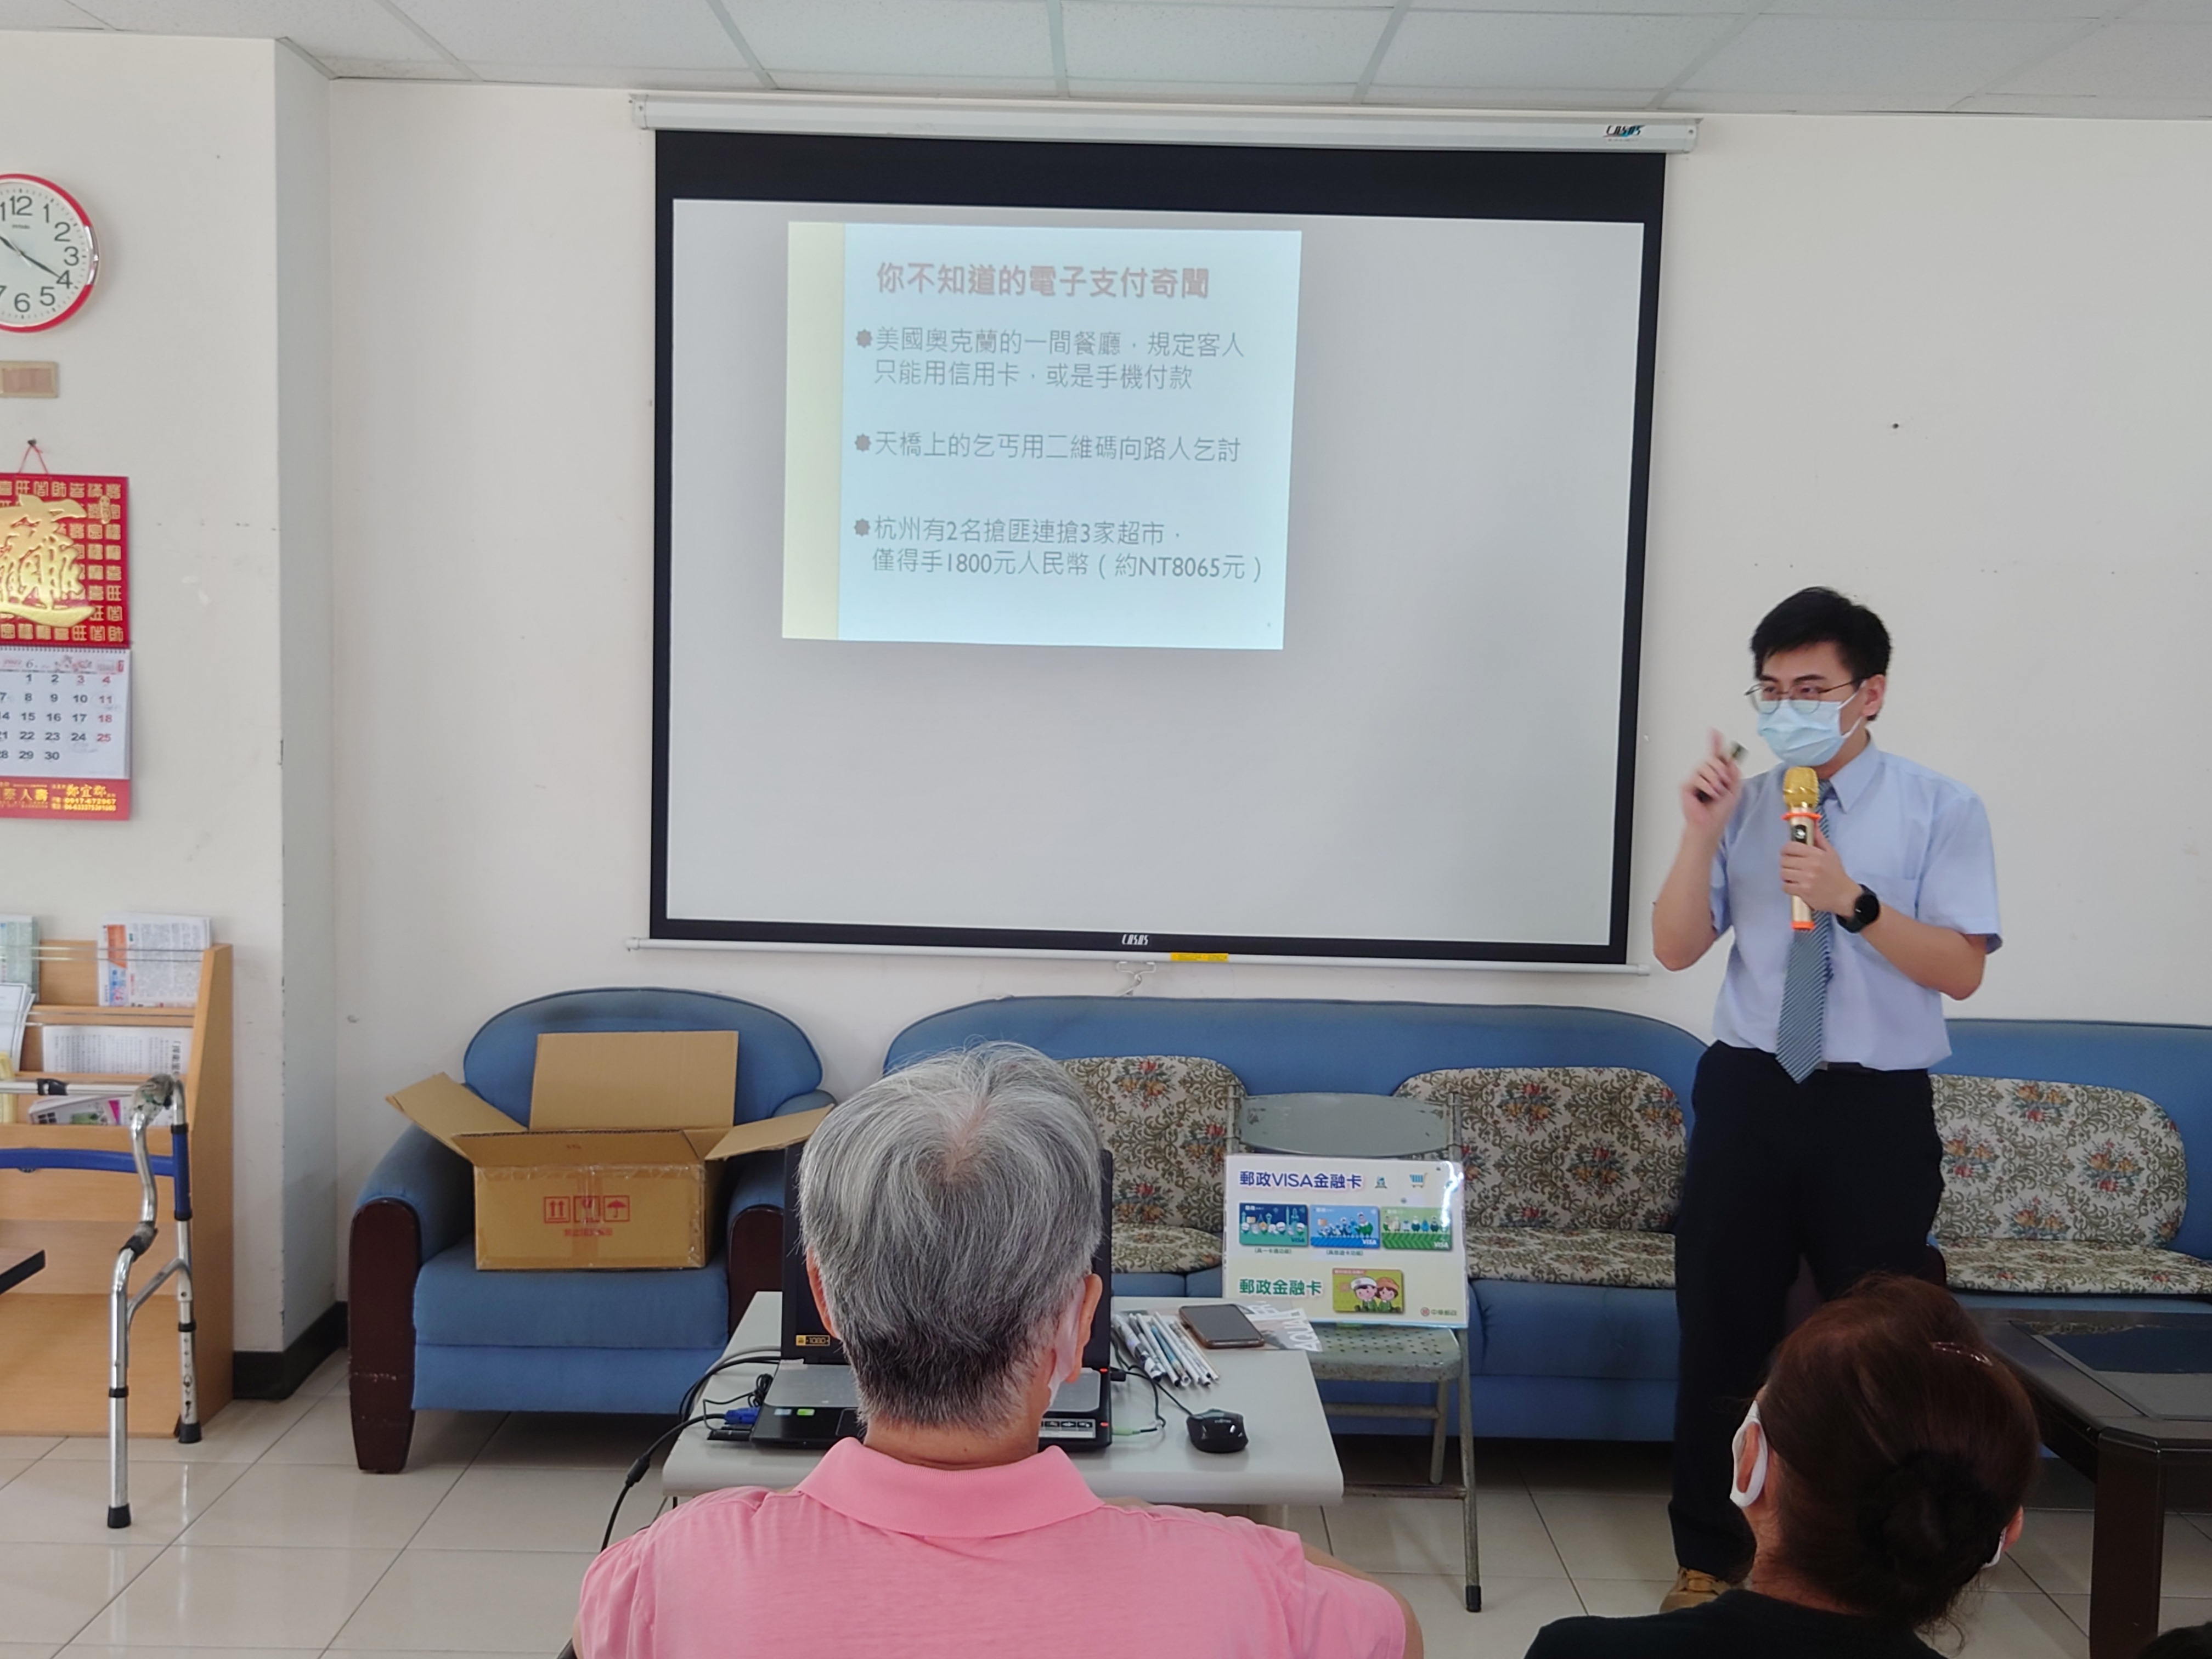 臺南郵局辦理金融知識社區講座